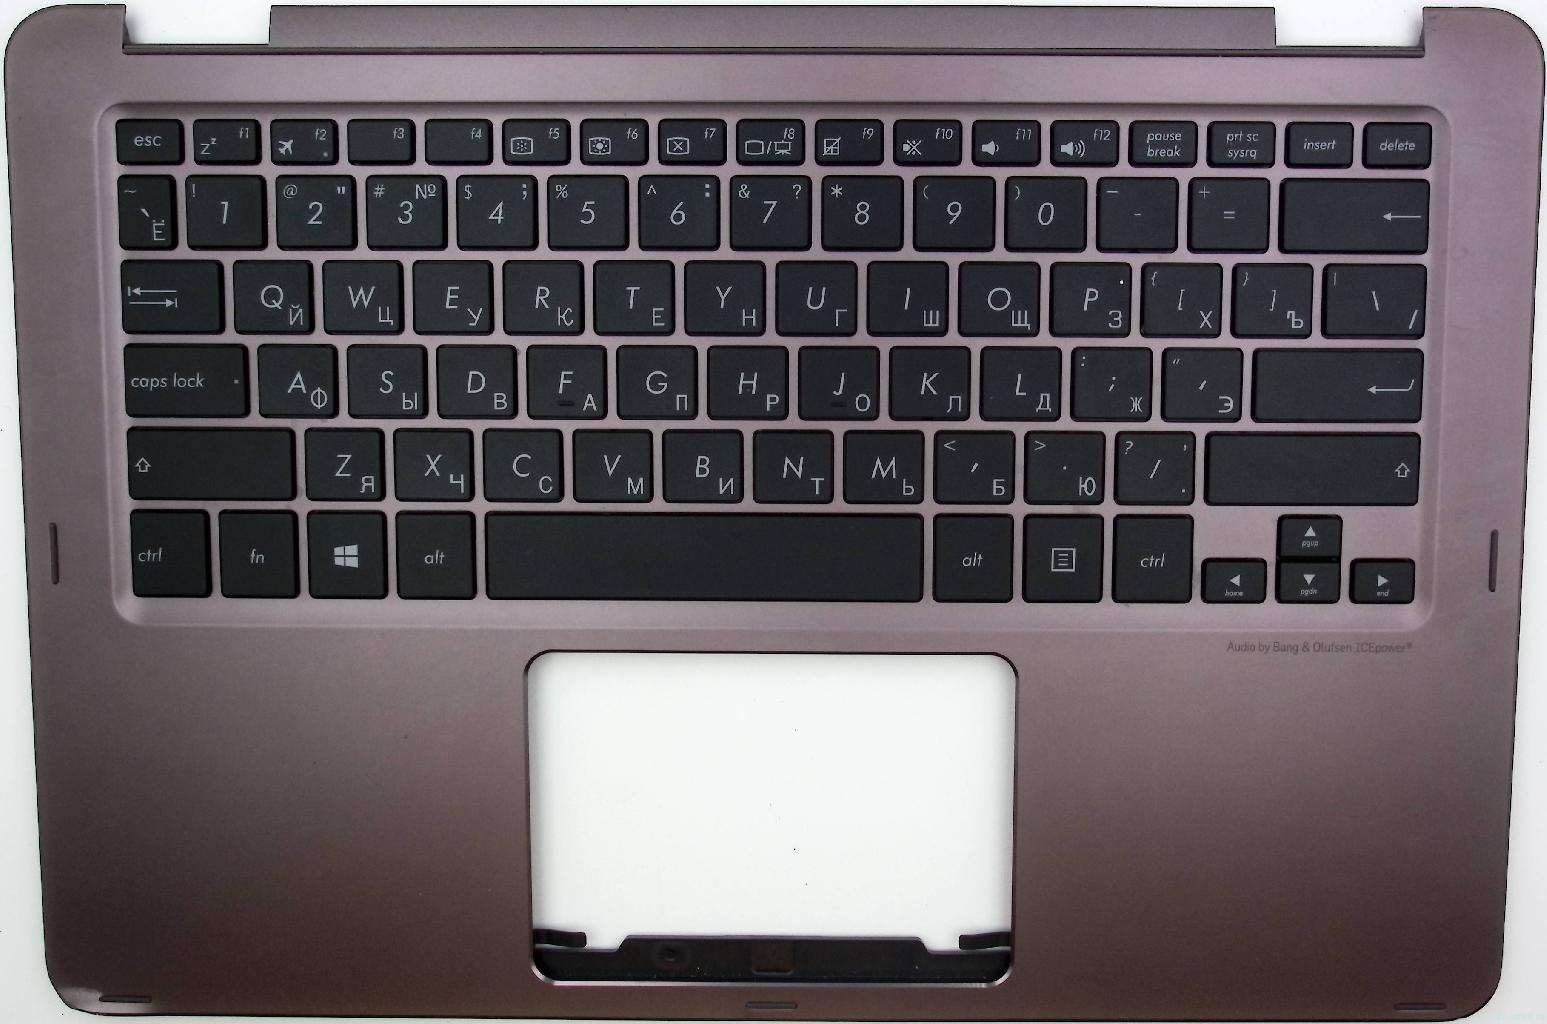 Топкейс-донор для ноутбука ASUS UX360